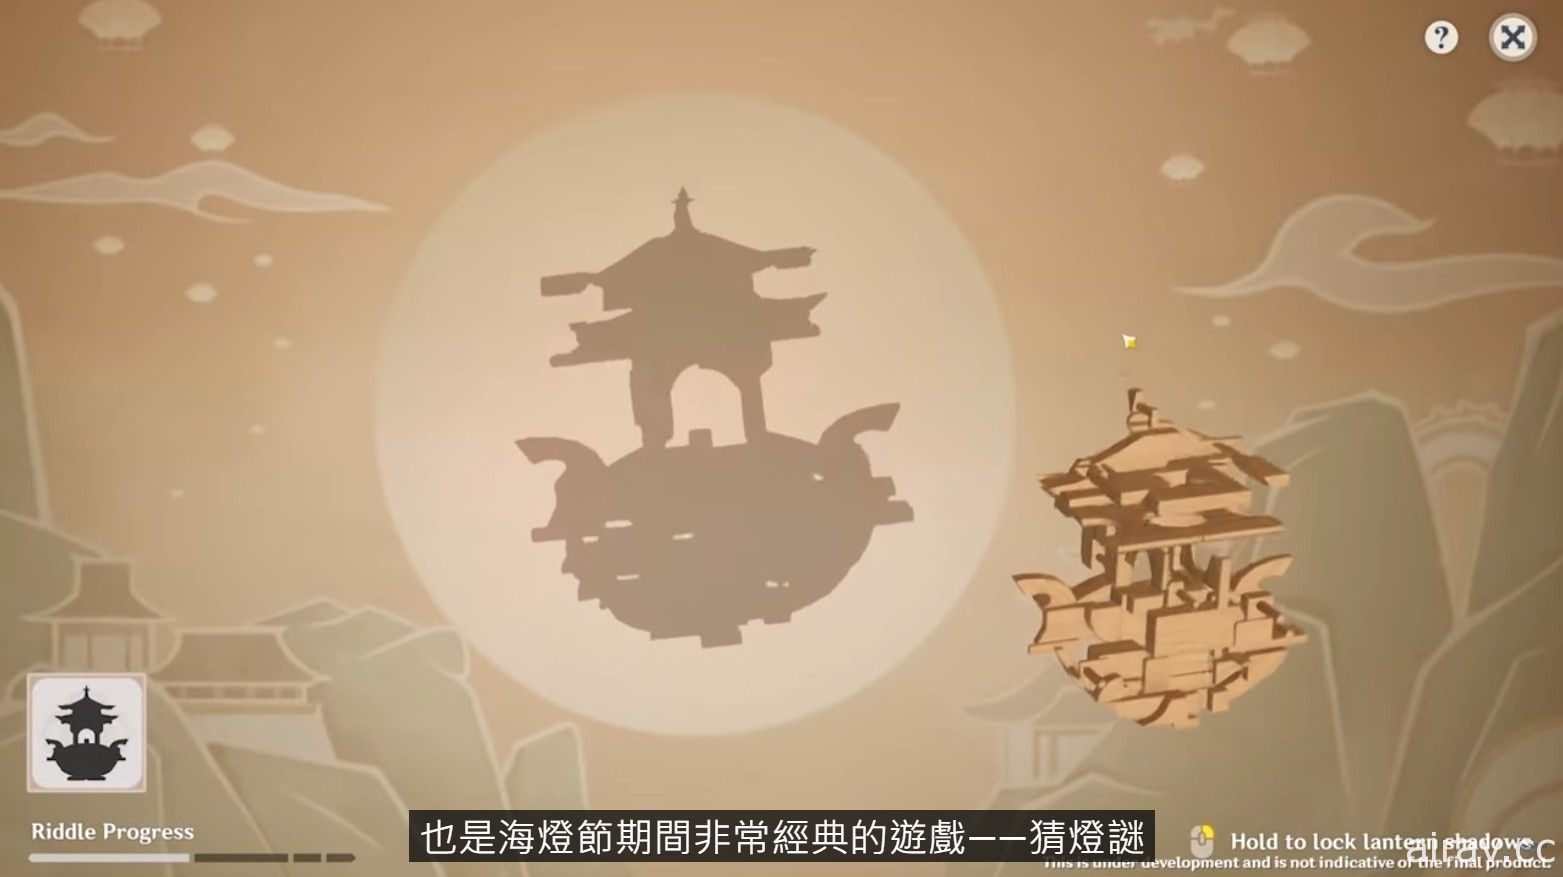 《原神》释出 2.4 版本预告“飞彩镌流年” 揭露新角色“申鹤”及“云堇”等情报